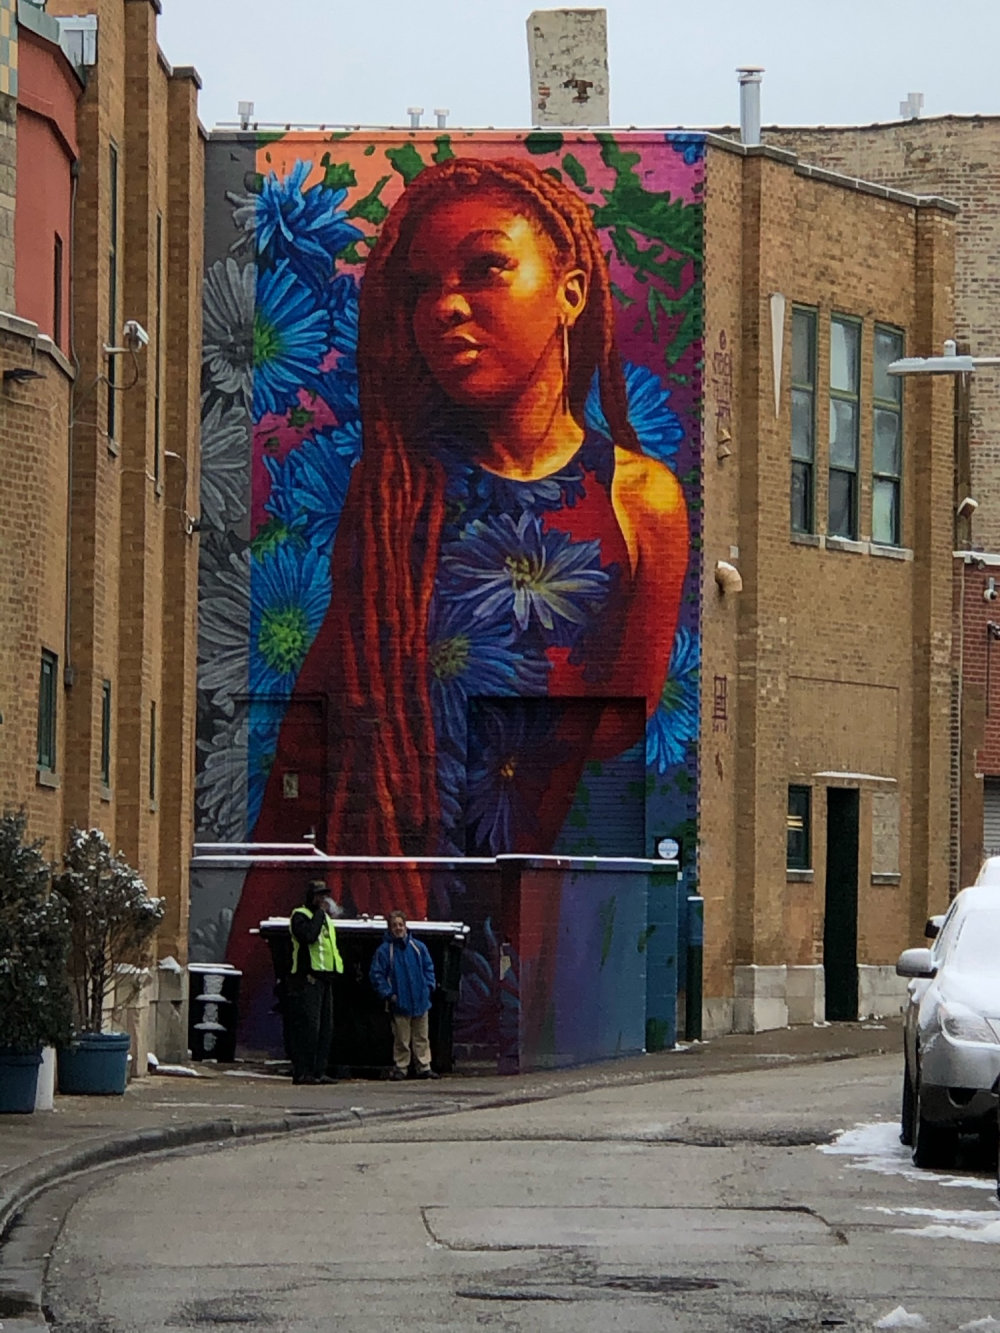 mural in Chicago by artist Steven Teller.